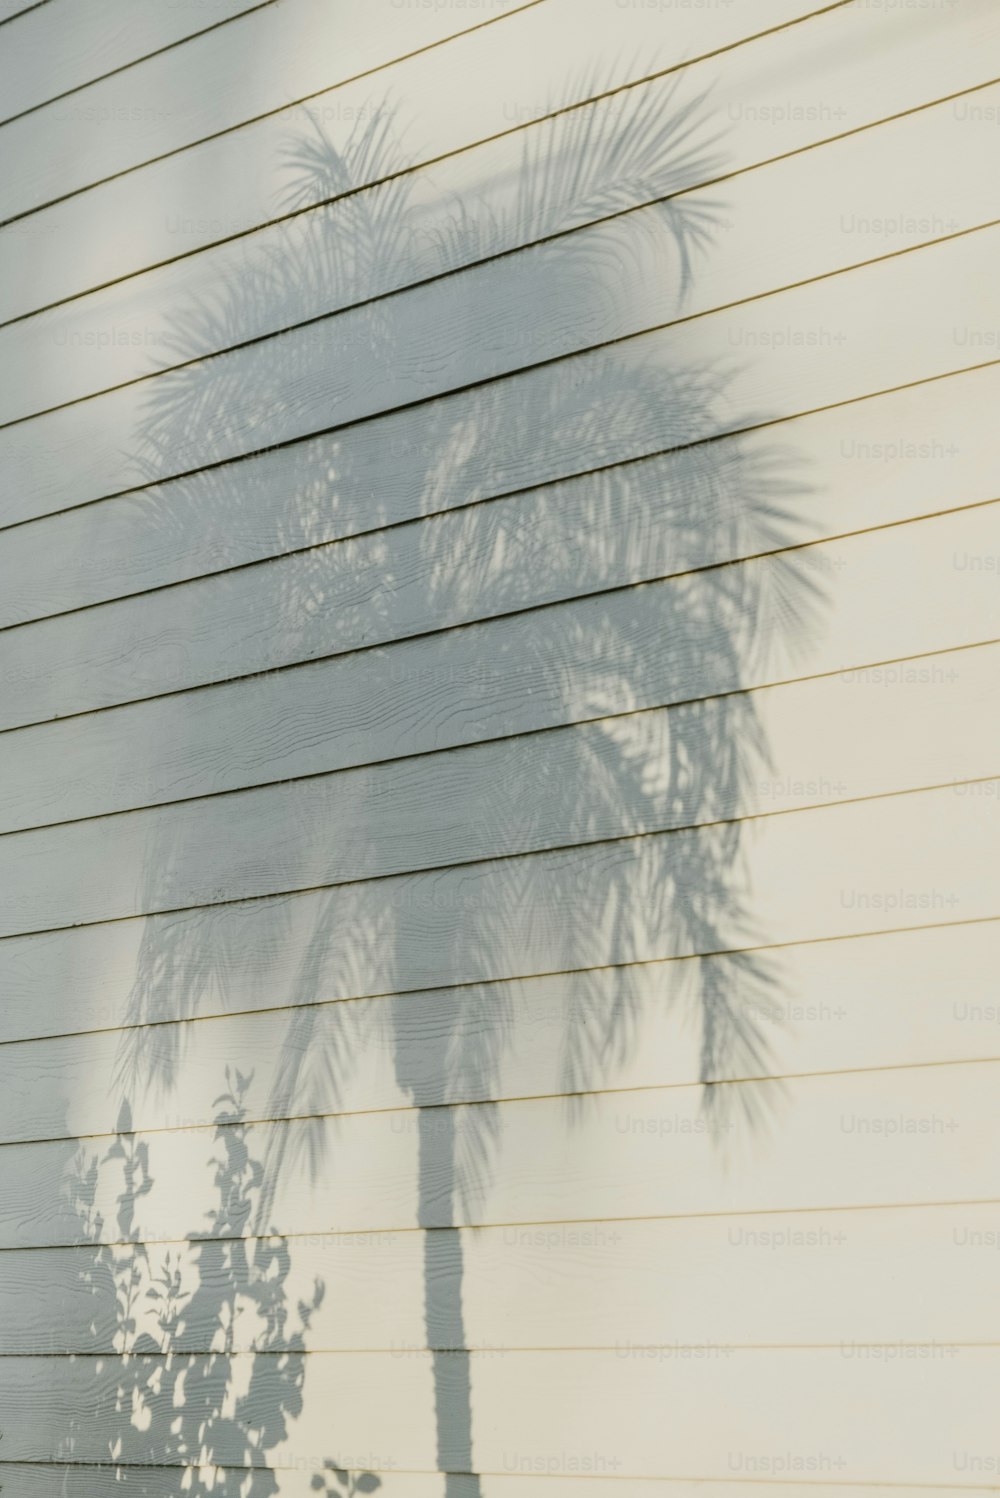 L’ombre d’un palmier sur le côté d’une maison